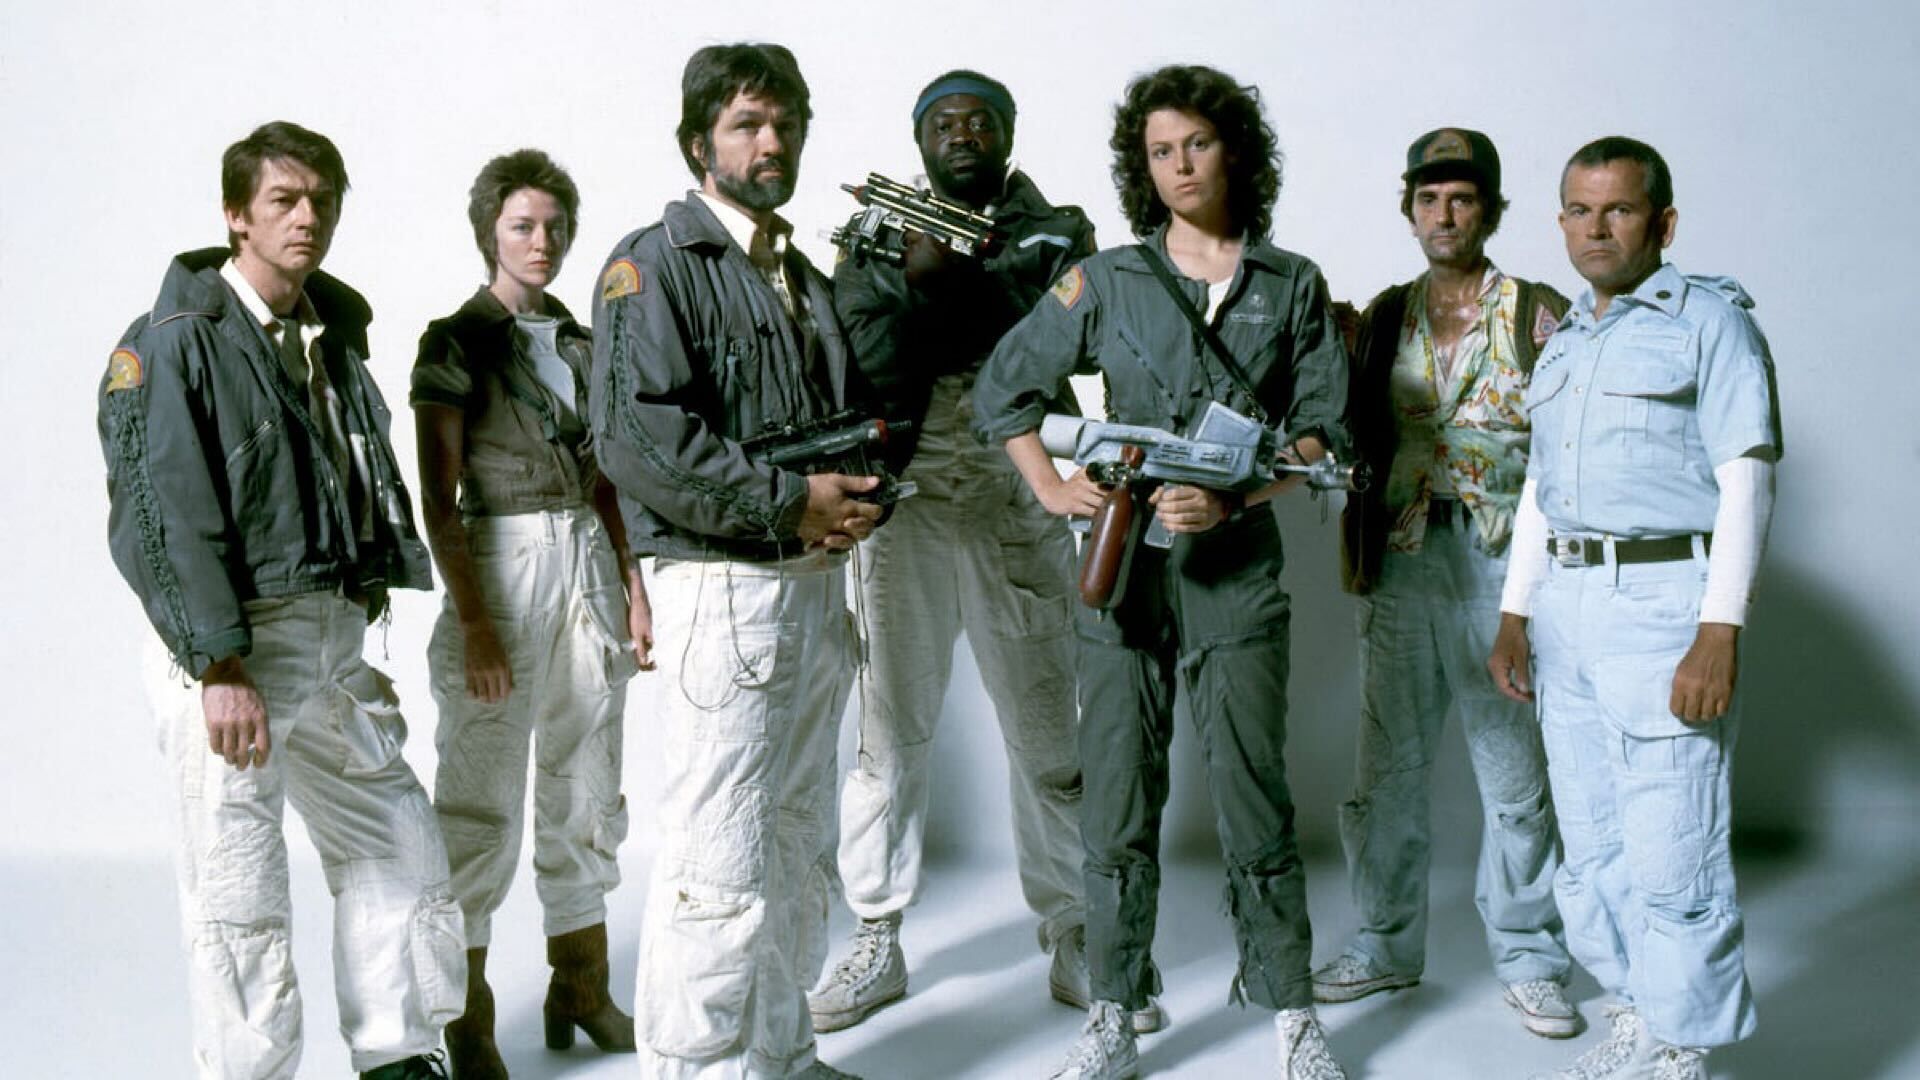 Cast of  Alien 1979 including Tom Skerritt and Sigourney Weaver